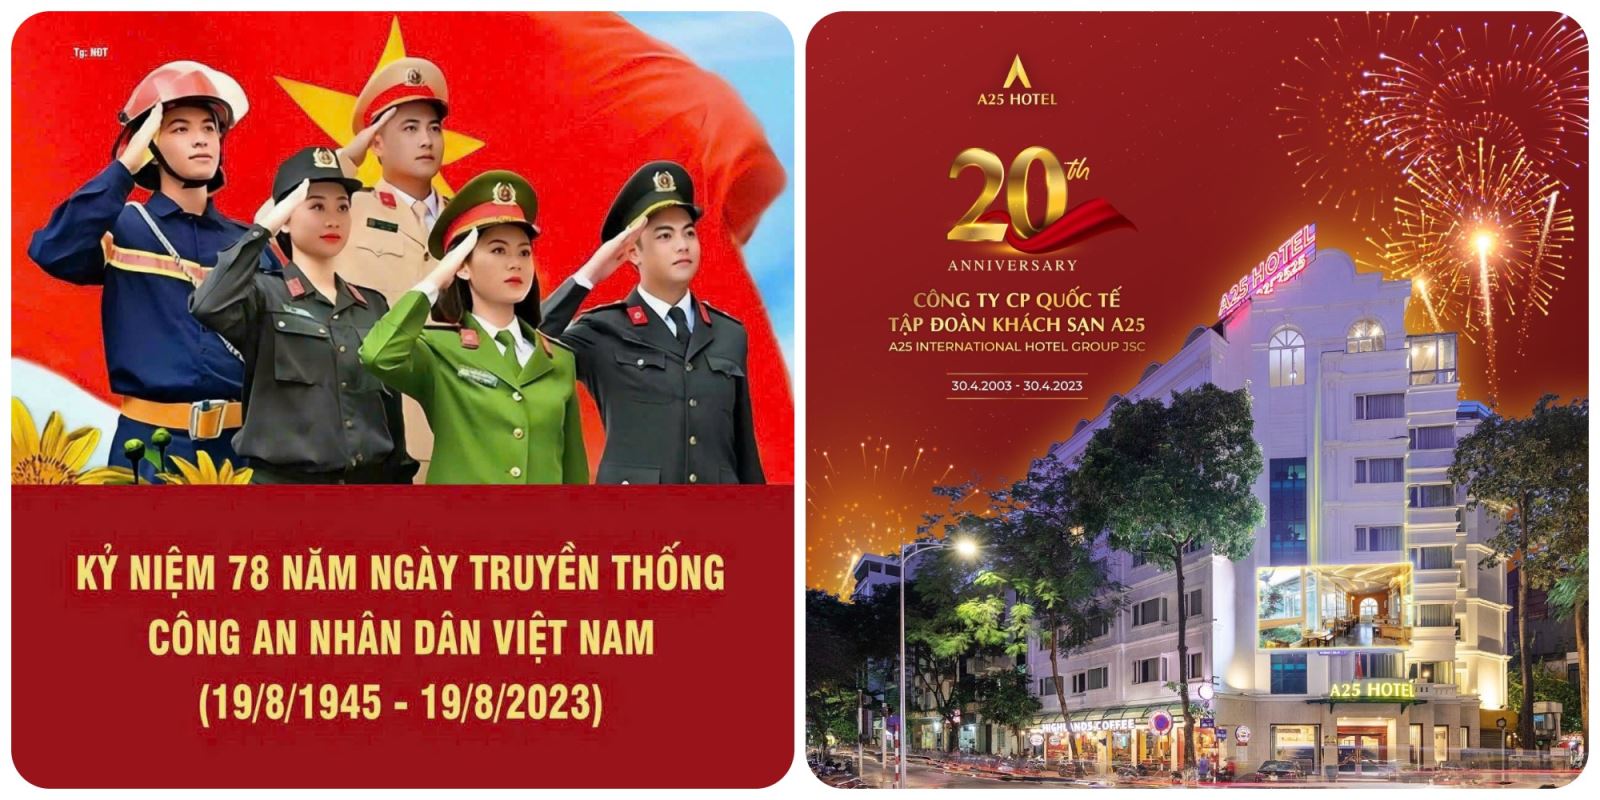 a25-hotel-chao-mung-ngay-truyen-thong-cua-cong-an-nhan-dan-viet-nam-–-19-08